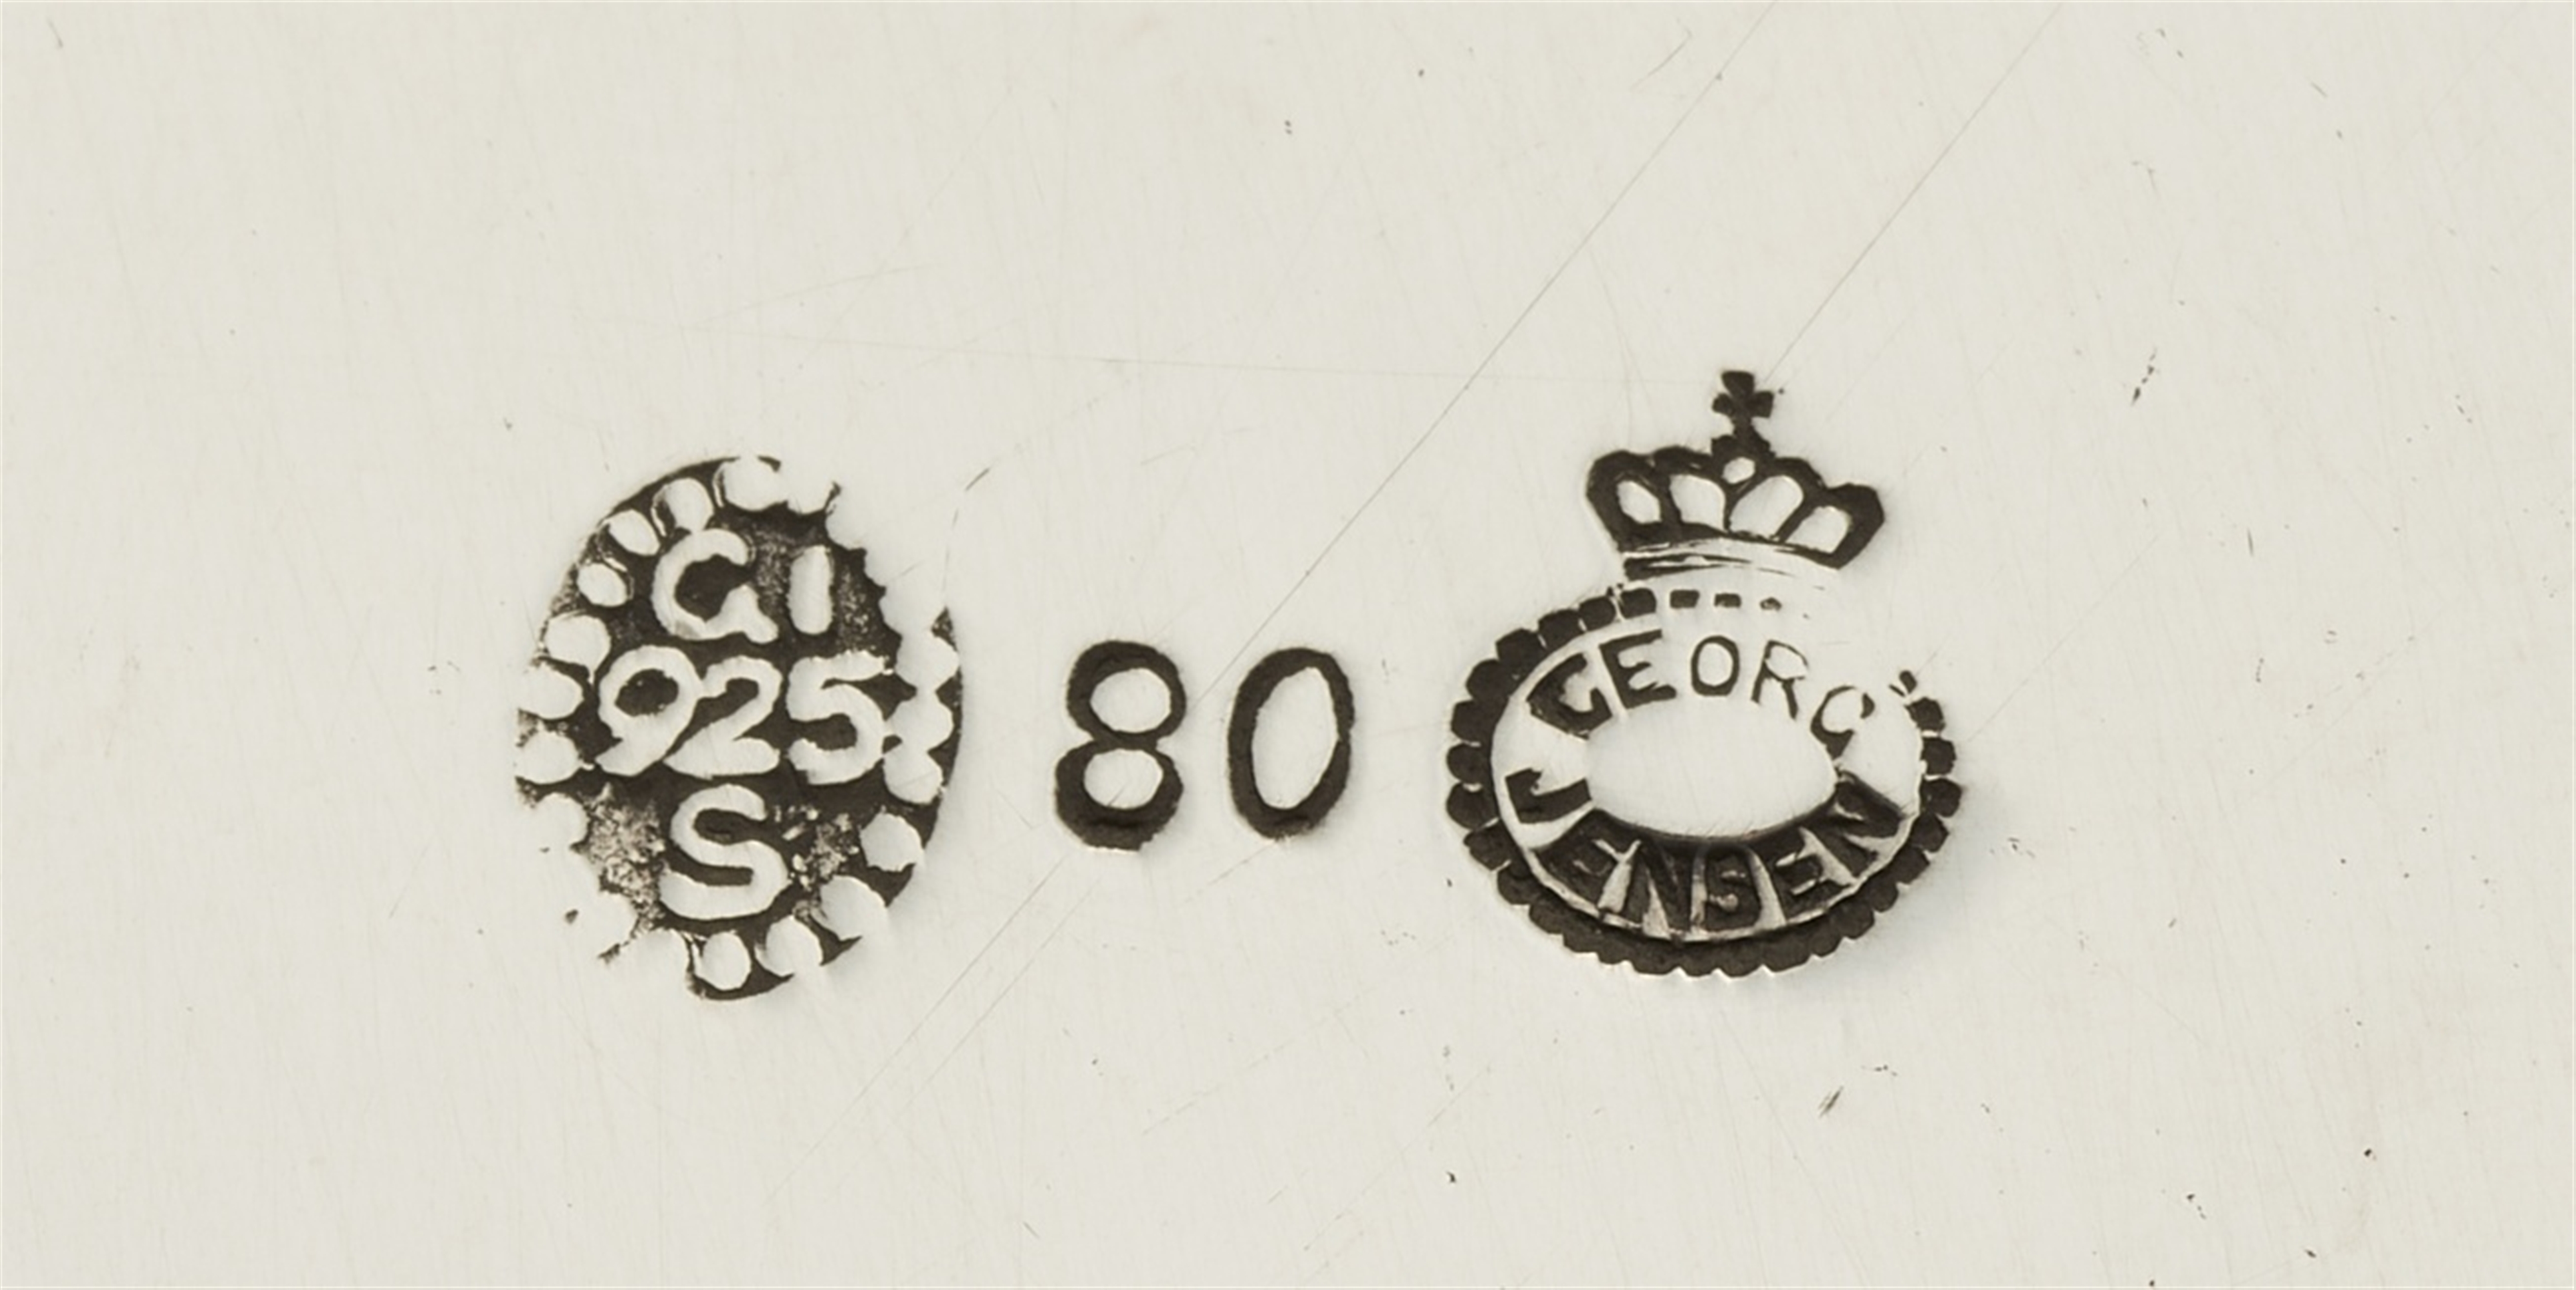 A Copenhagen silver service by Georg Jensen, model no. 80 - Image 2 of 2